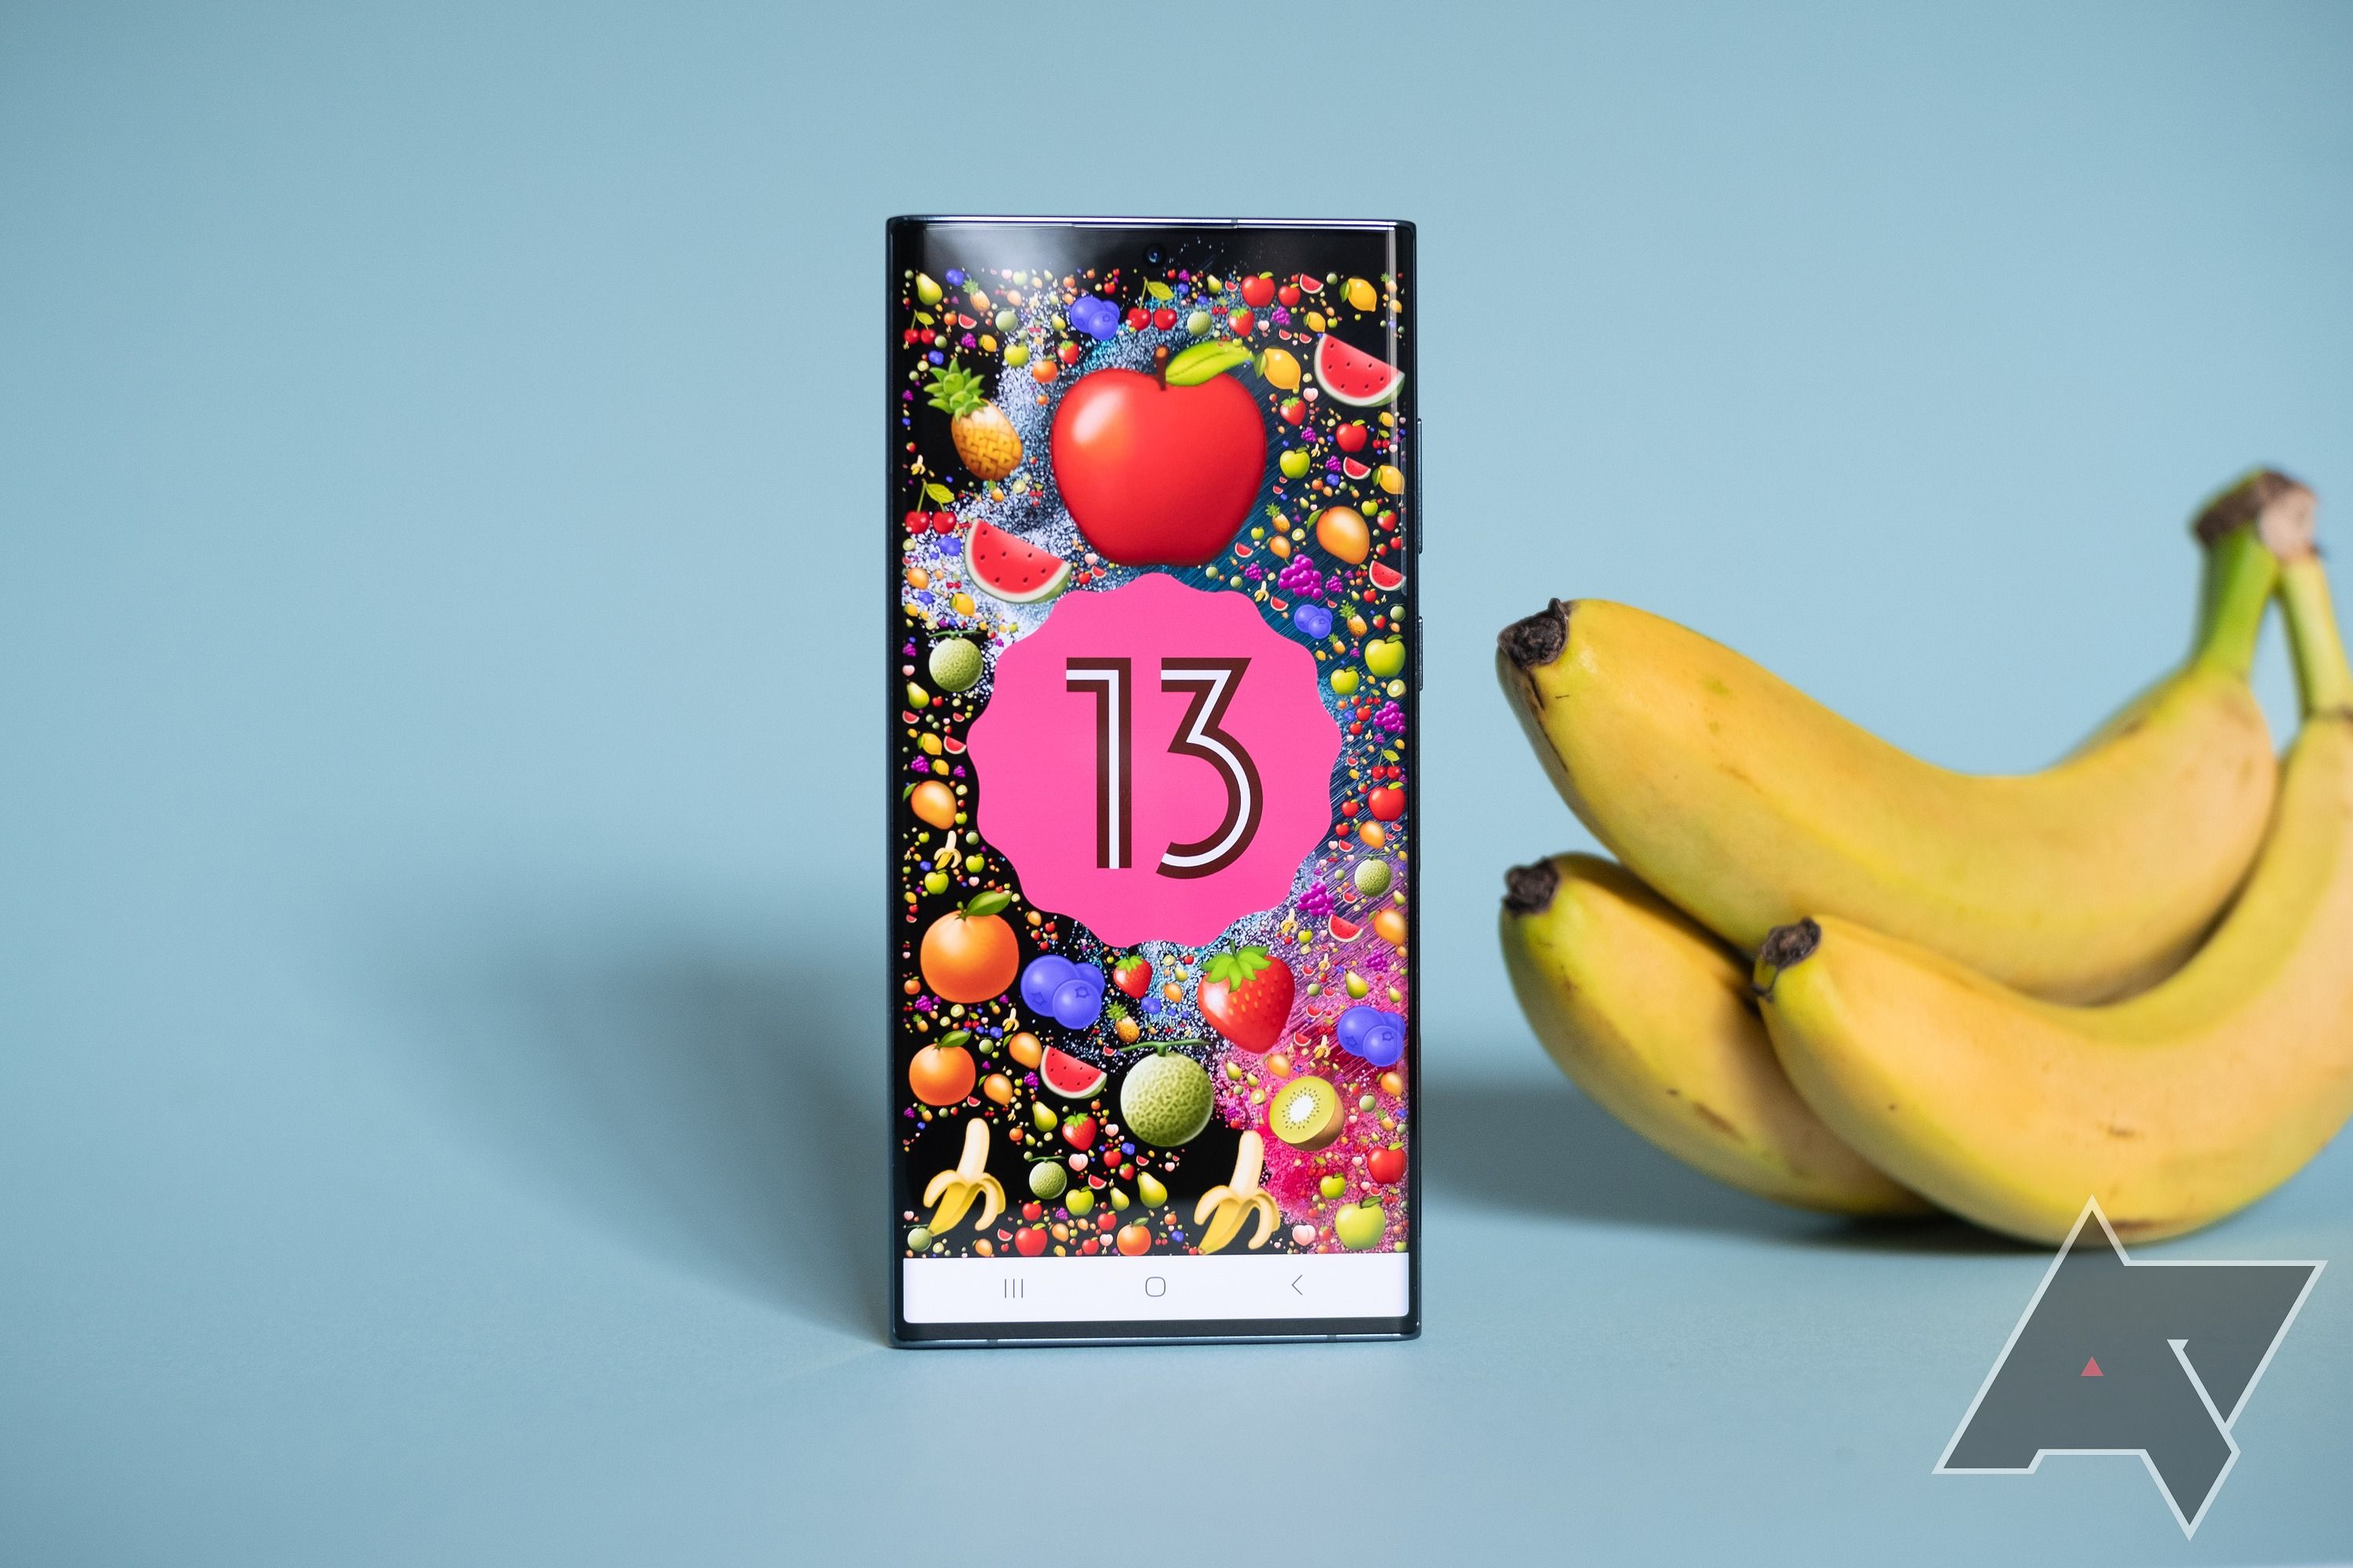 Um Samsung Galaxy S22 Ultra, mostrando o ovo de páscoa emoji do Android 13, ao lado de um cacho de bananas.